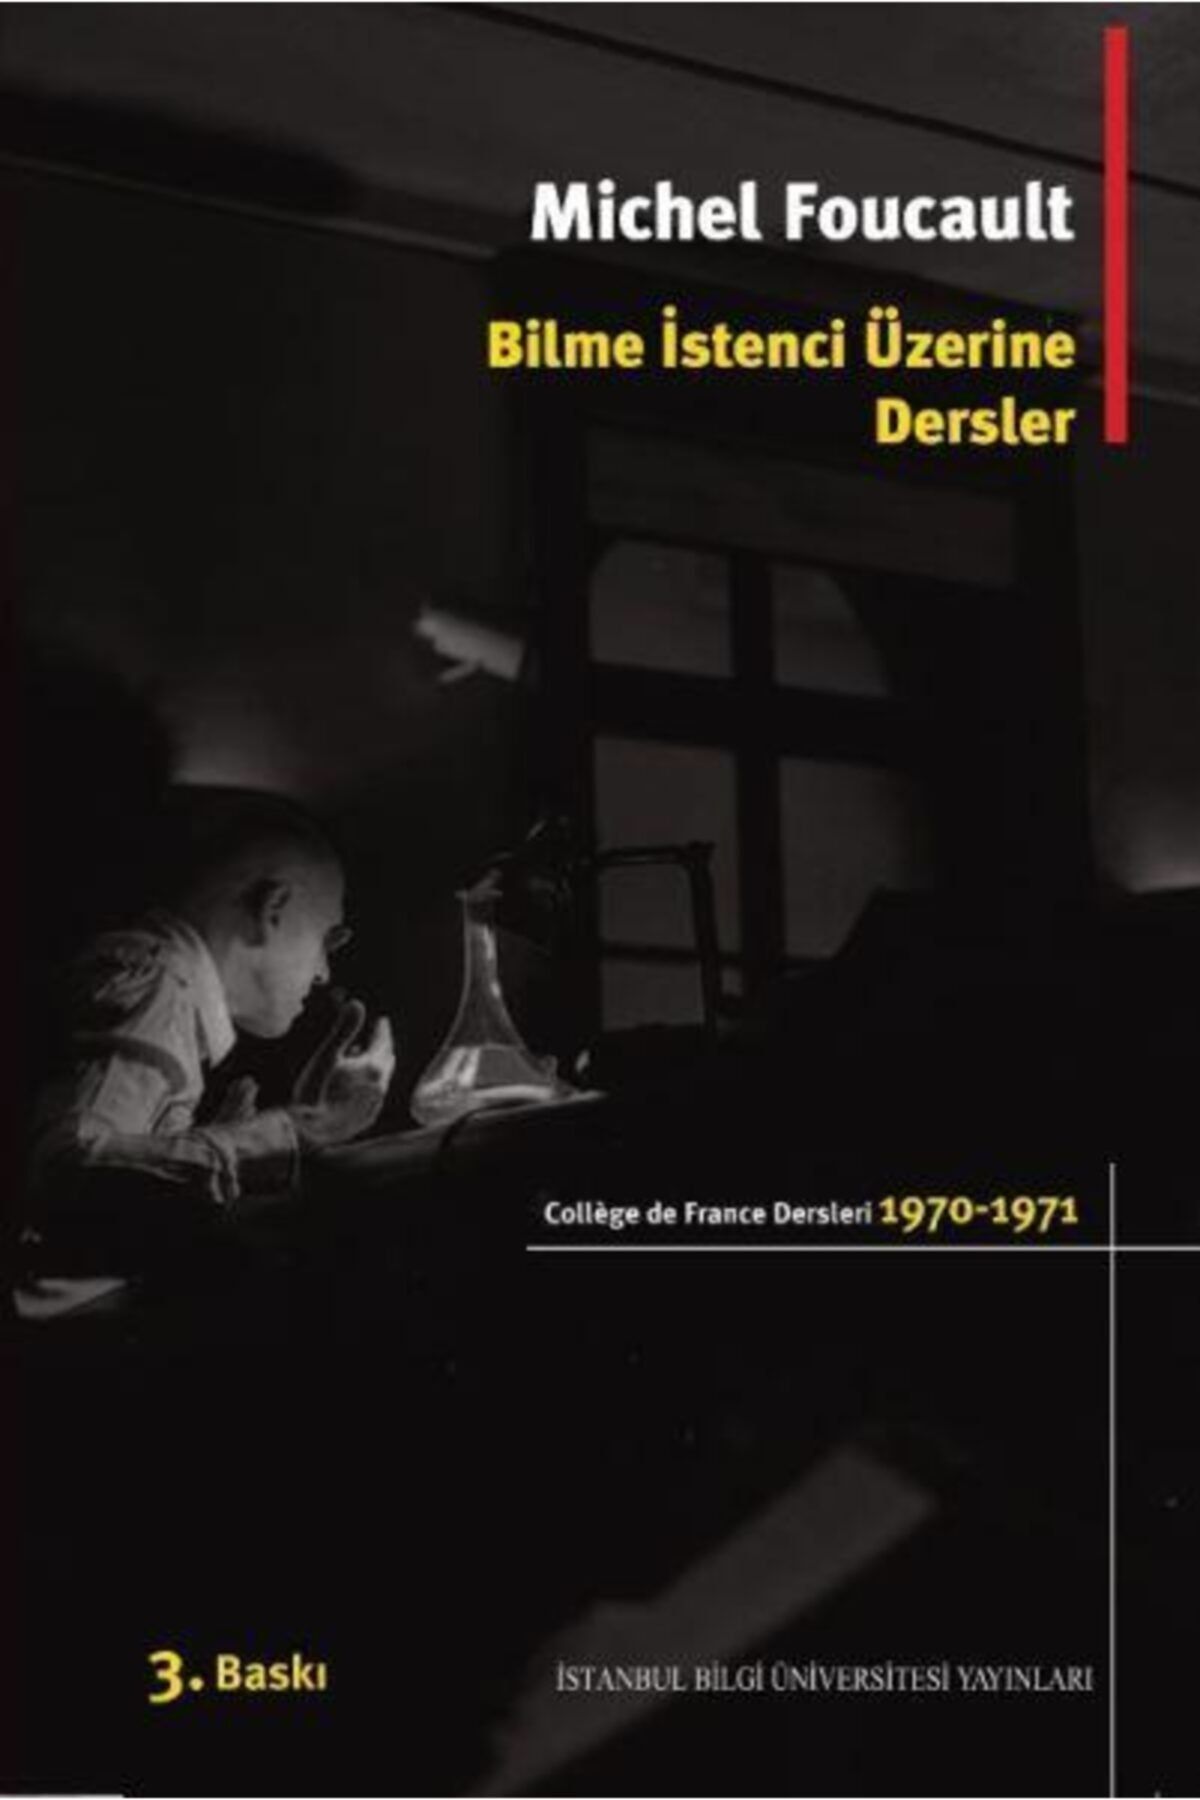 İstanbul Bilgi Üniversitesi Yayınları Bilme Istenci Üzerine Dersler 1970 1971 College De France Ders No